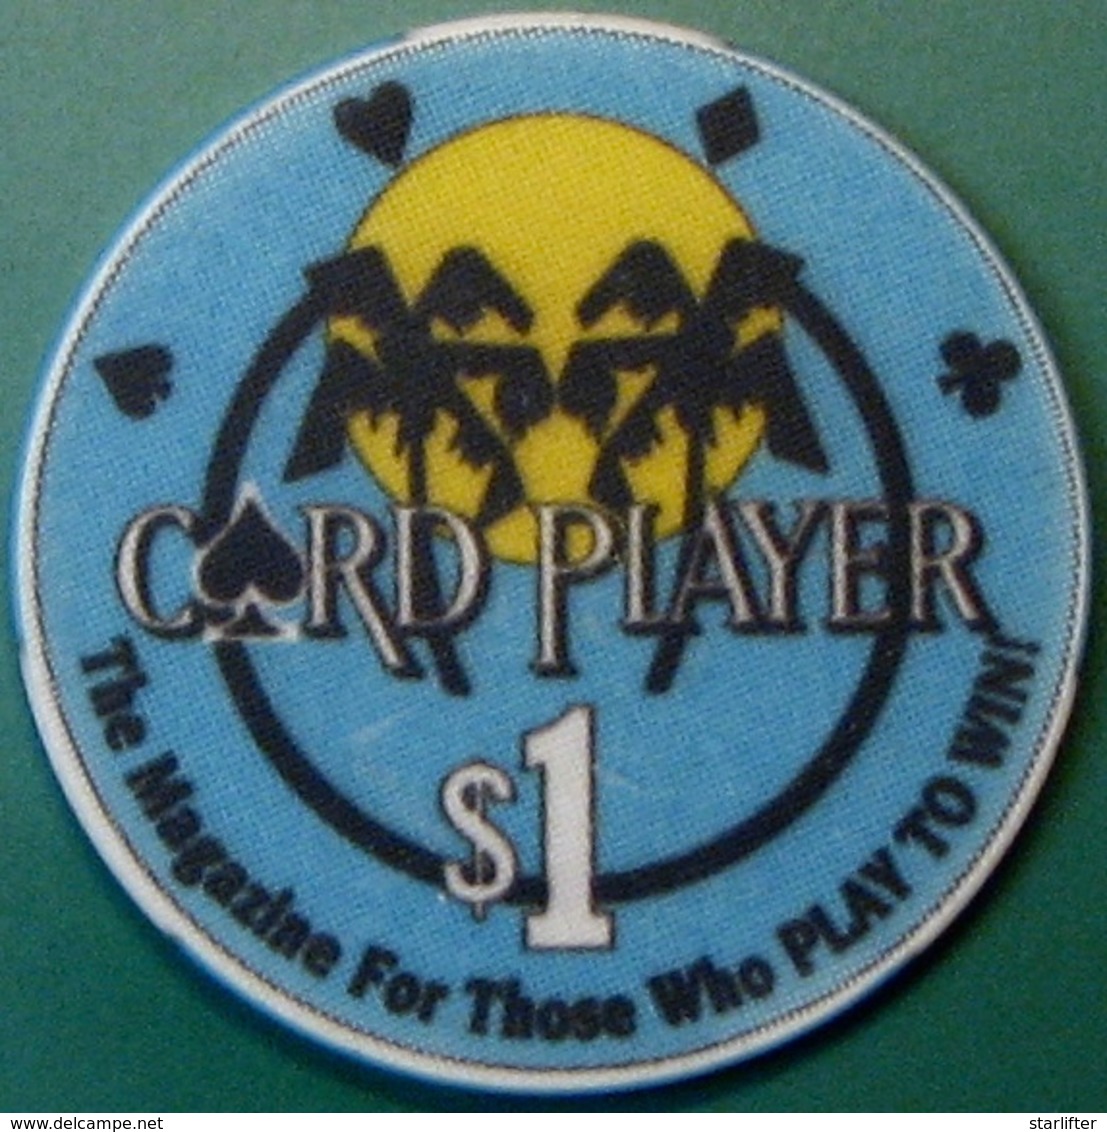 $1 Casino Chip. Card Player Cruises. G99. - Casino